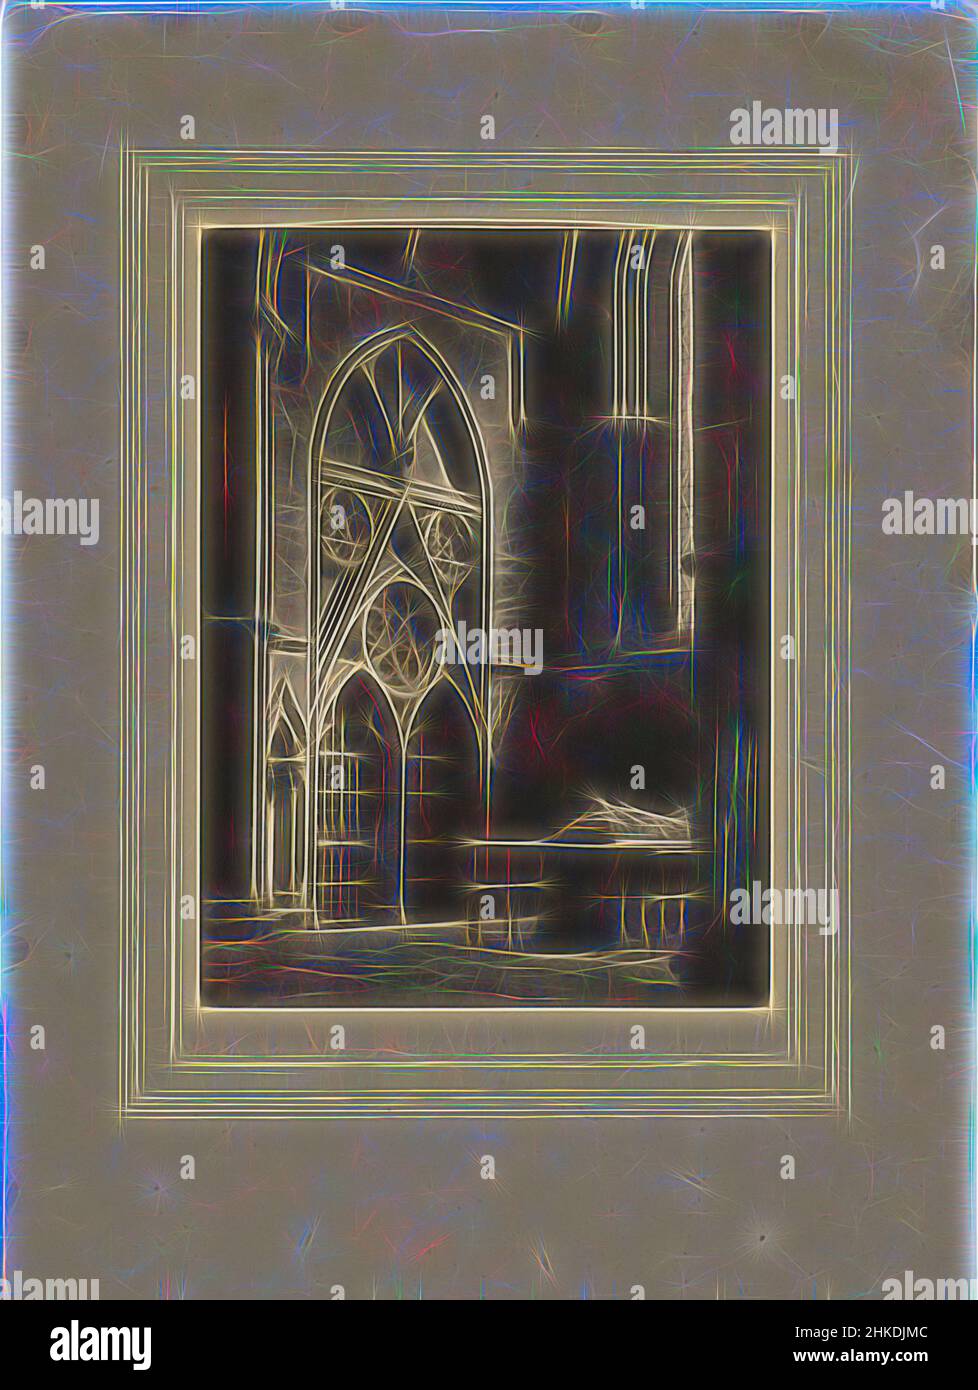 Inspirado en el interior de la Catedral de York, la catedral de York, en la esperanza segura y cierta, Vista en una capilla lateral con una escultura funeraria., Frederick H. Evans, York, c. 1898 - 1903, papel, altura 200 mm x anchura 147 mm altura 374 mm x anchura 250 mm, Reimaginado por Artotop. Arte clásico reinventado con un toque moderno. Diseño de brillo cálido y alegre y luminosidad e radiación de rayos de luz. Fotografía inspirada en el surrealismo y el futurismo, que abarca la energía dinámica de la tecnología moderna, el movimiento, la velocidad y la revolución de la cultura Foto de stock